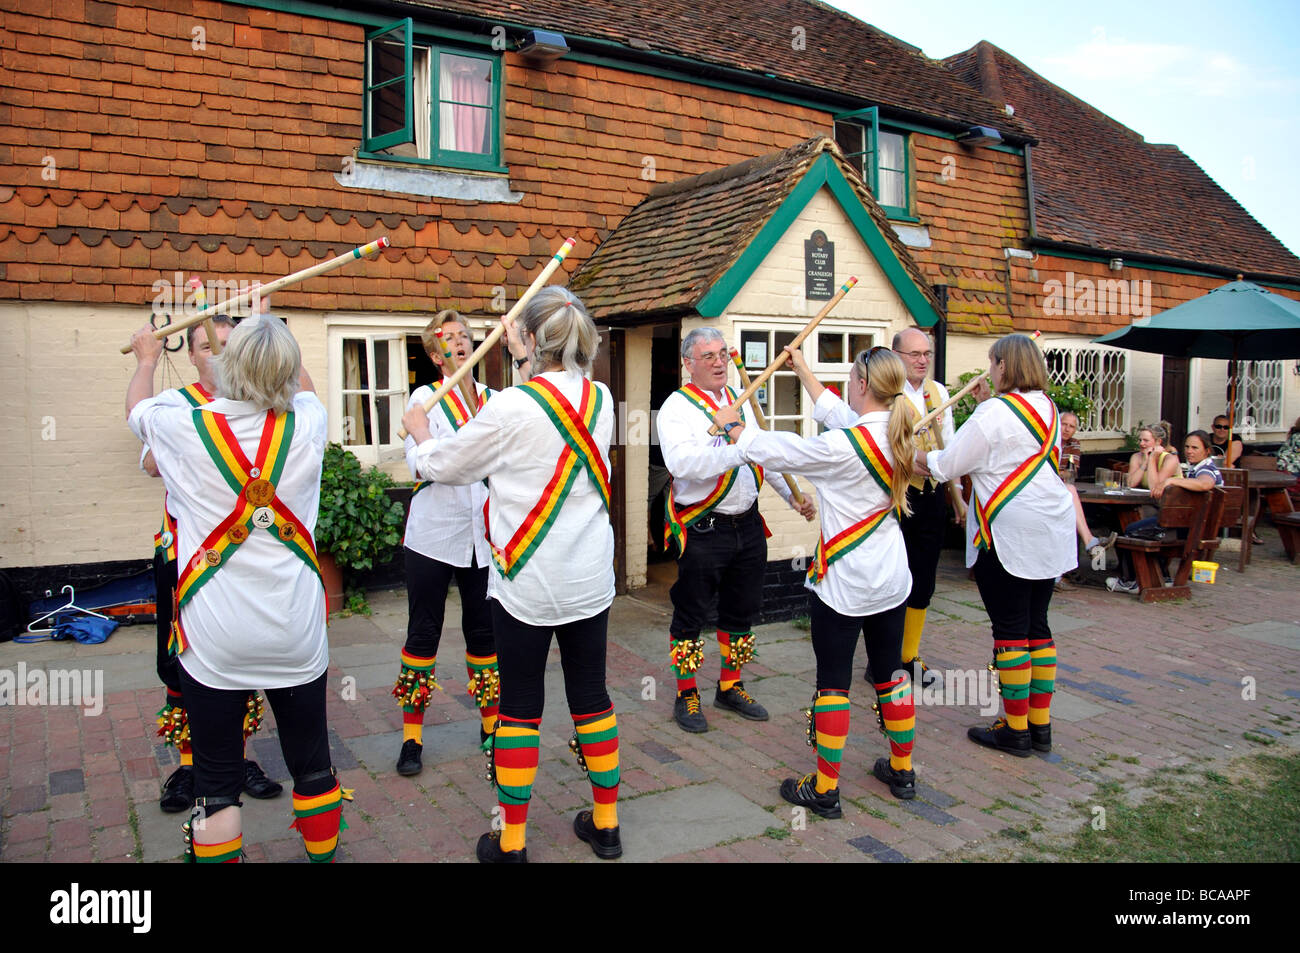 Morris dancing, le Parrot Inn, vert forêt, Surrey, Angleterre, Royaume-Uni Banque D'Images